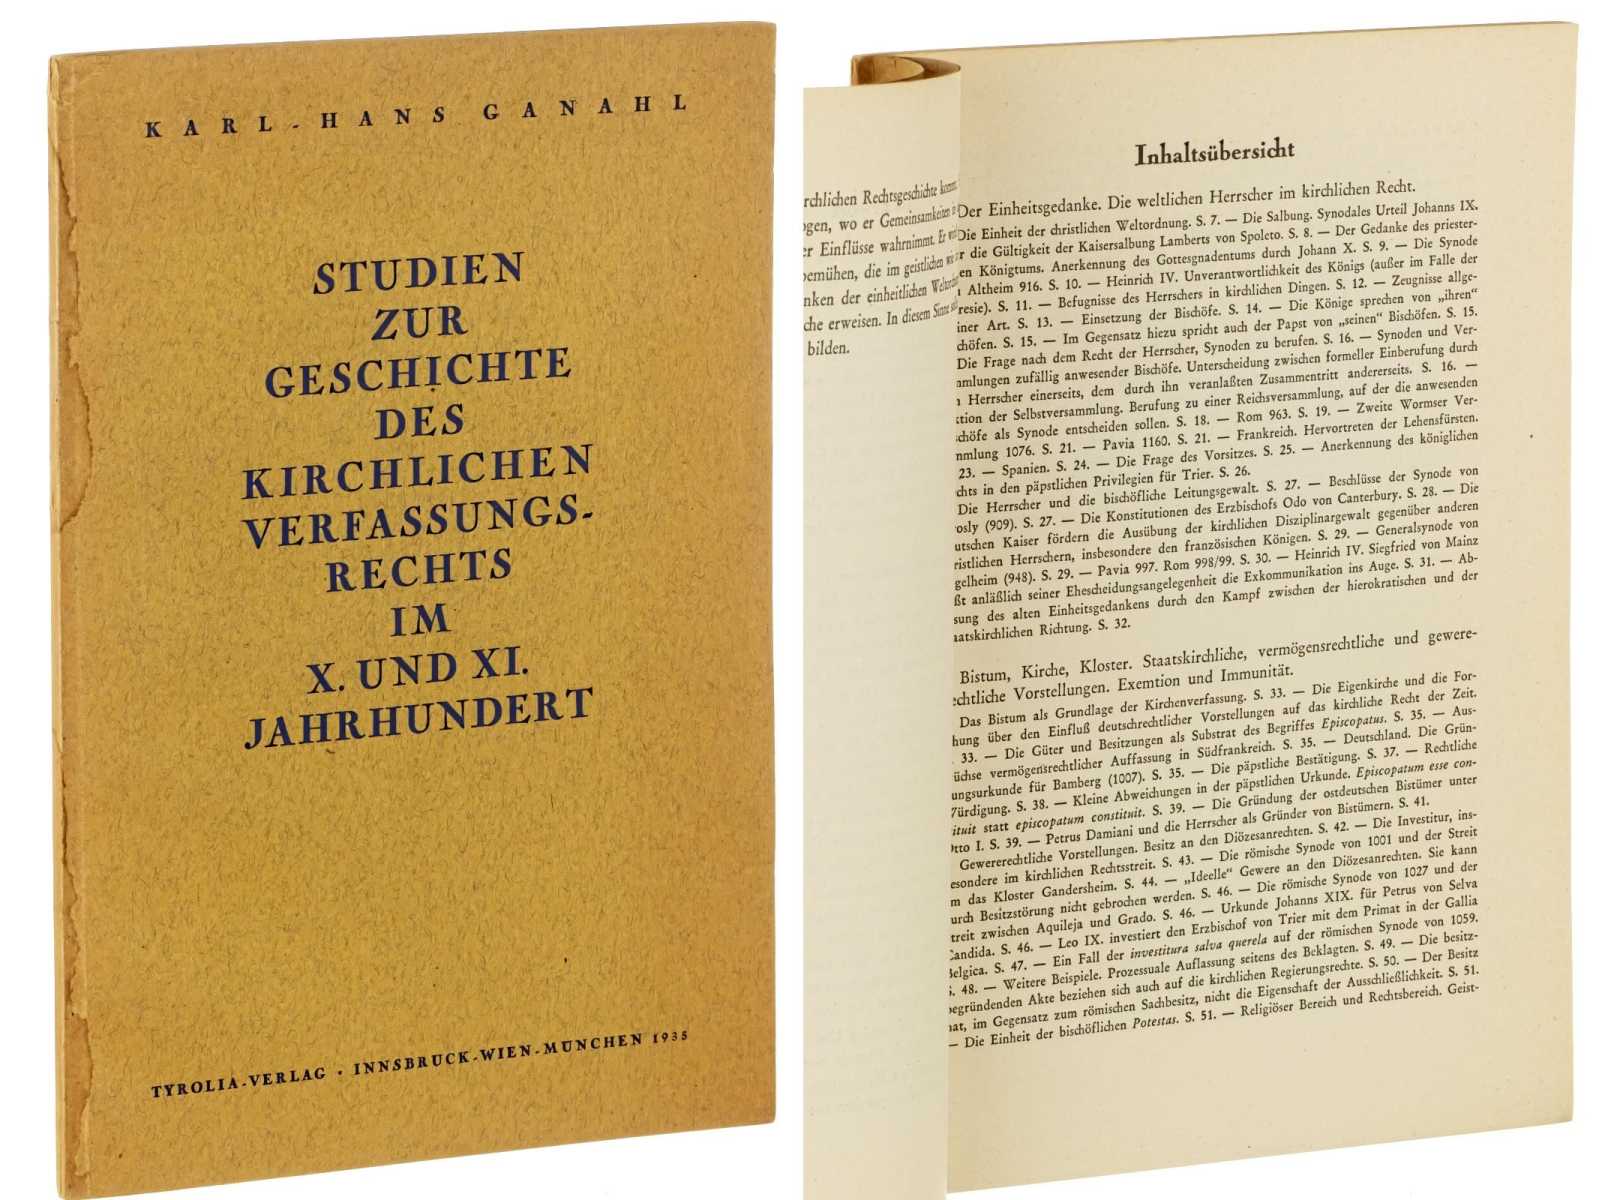 Ganahl, Karl-Hans:  Studien zur Geschichte des kirchlichen Verfassungsrechts im X. und XI. Jahrhundert. 